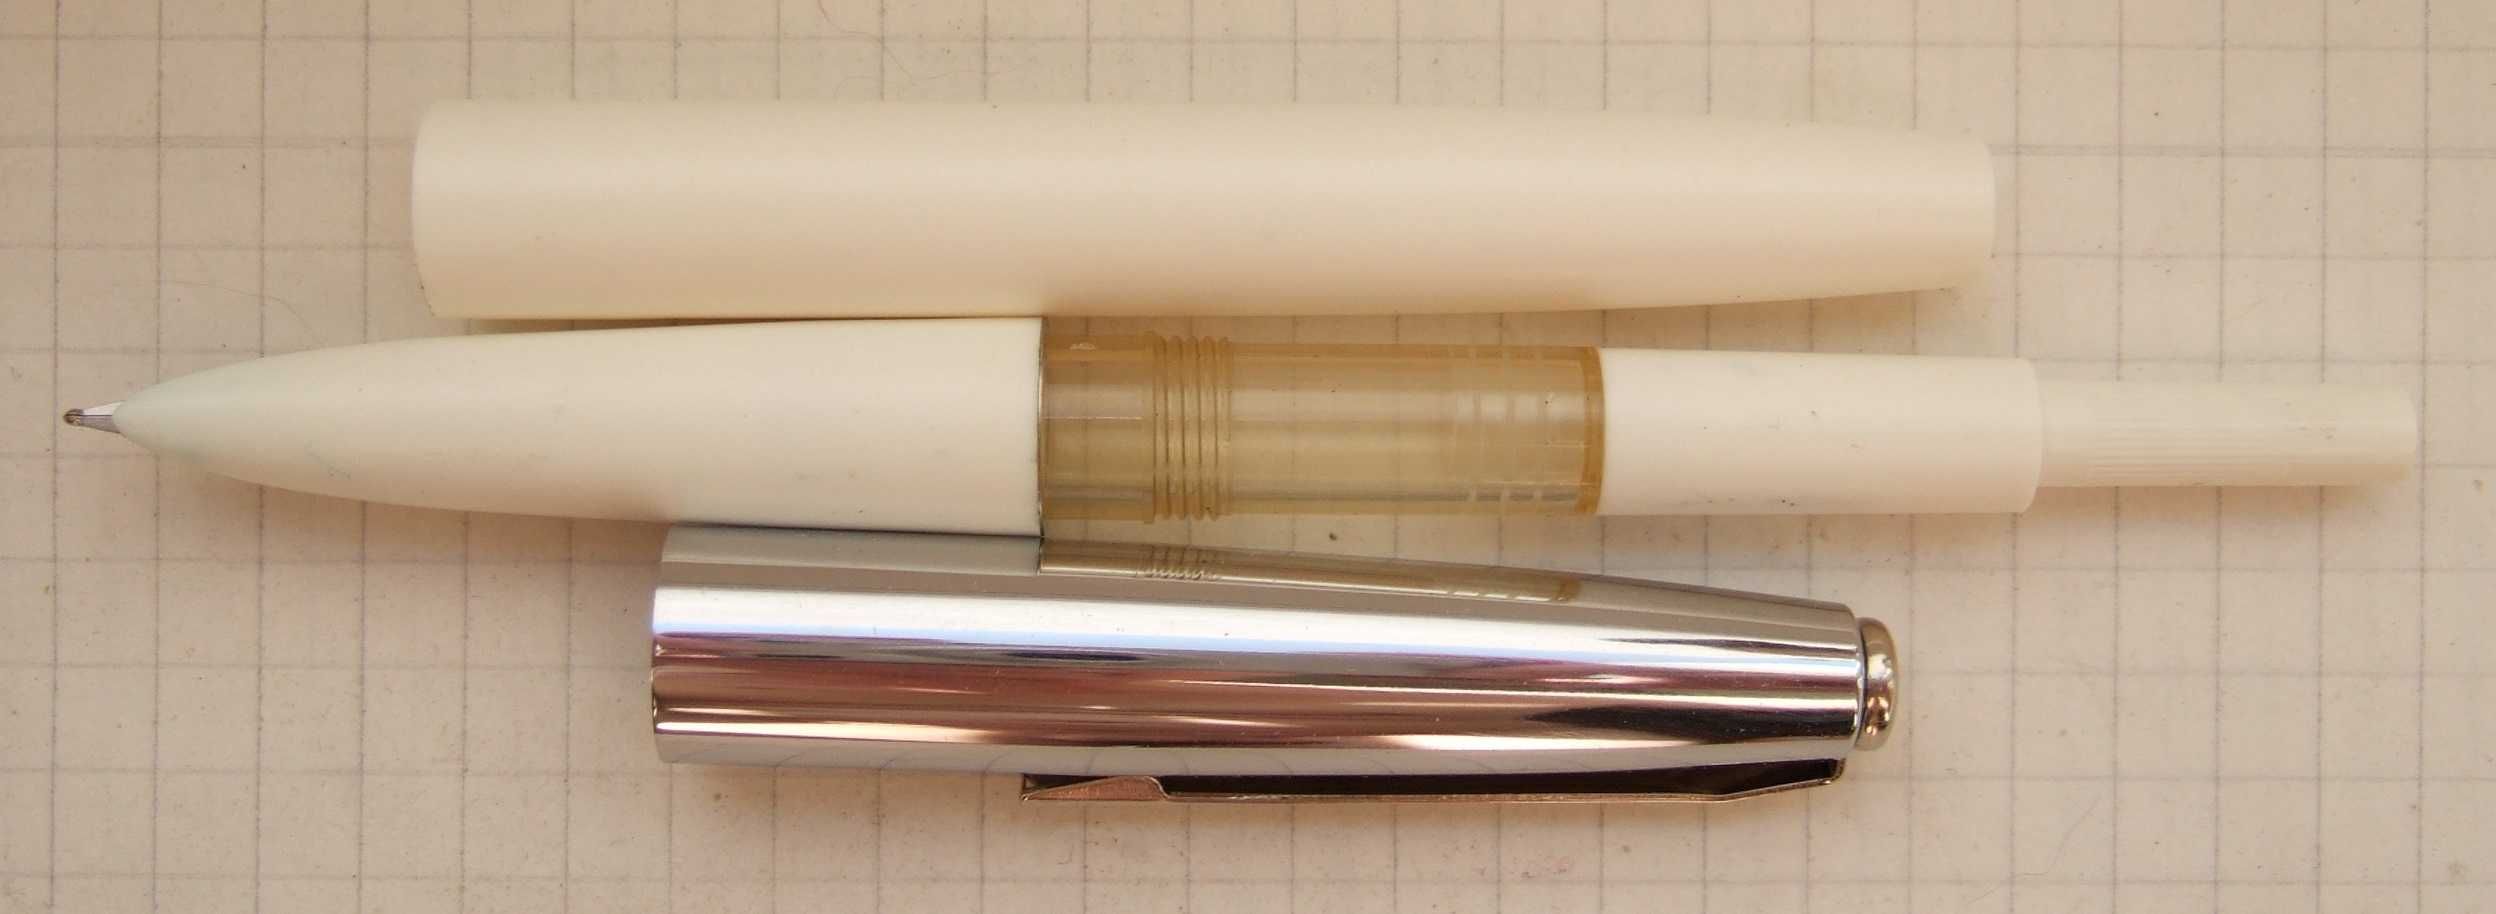 Нова перова ручка АР-19. Пише м'яко, тонко і насичено